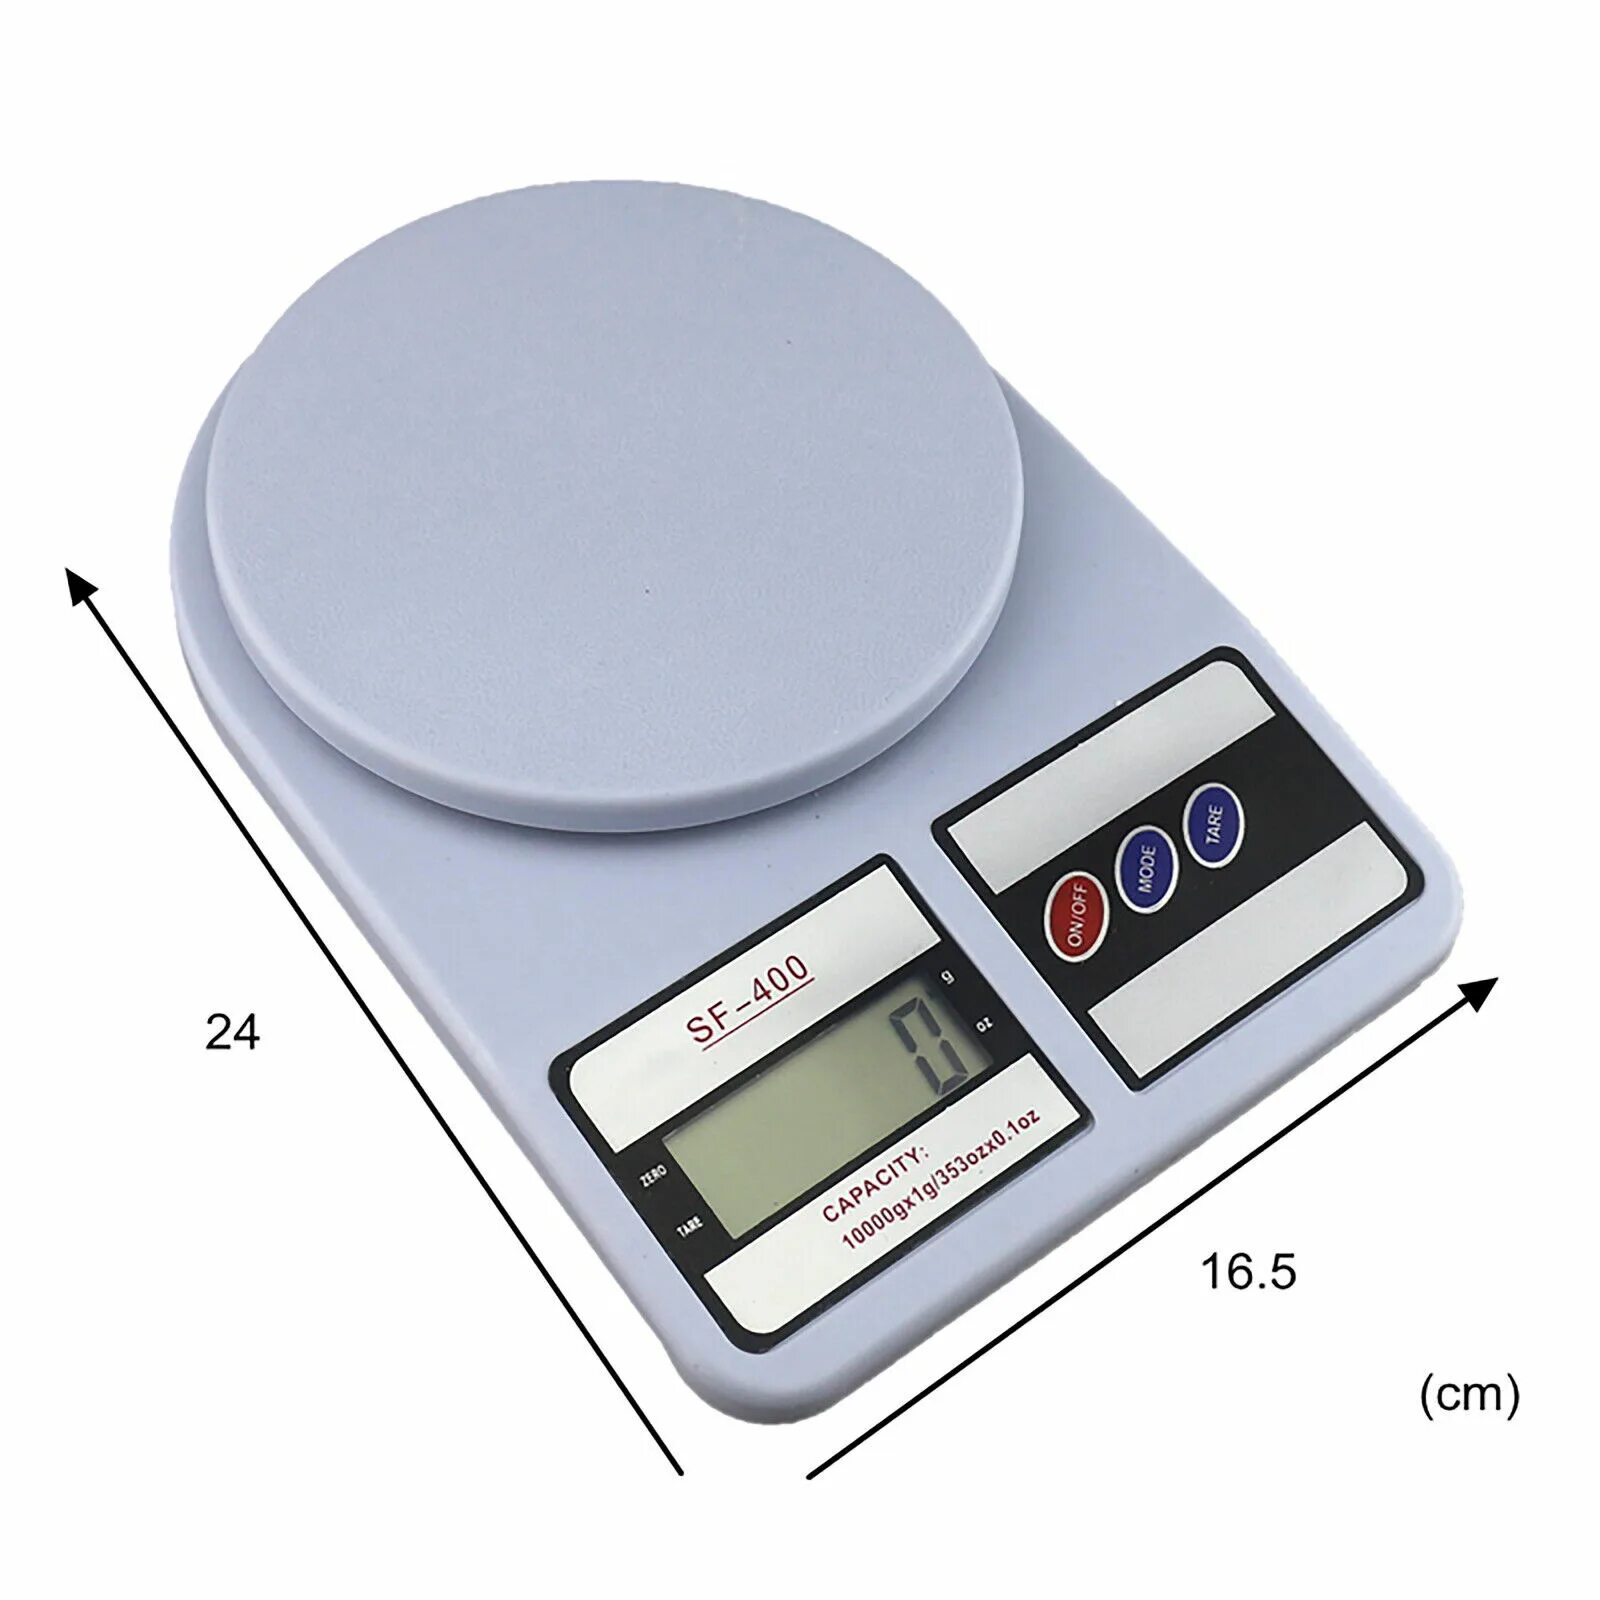 Весы кухонные 1 г. Электронные весы Digital Scale. YX-006 электронные весы китайские. Электронные весы Electronic Scale tcb602(600g/0.01g). Весы электронные 10кг (Китай).